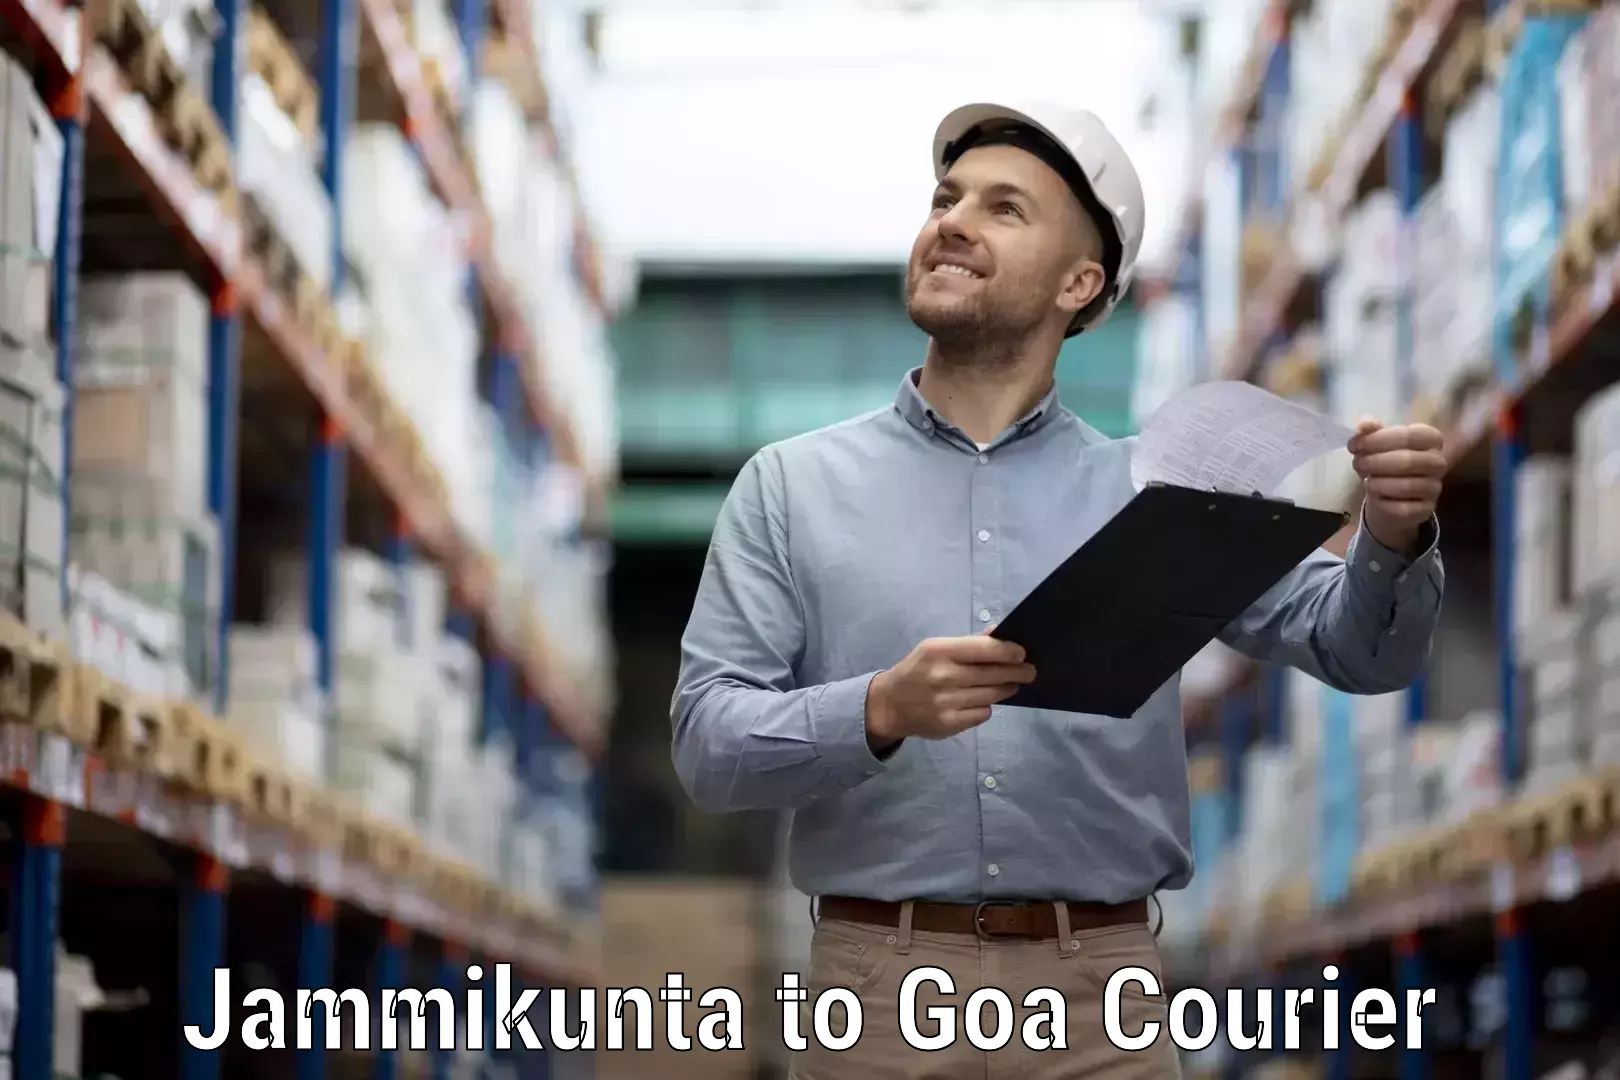 Bulk order courier in Jammikunta to Panaji